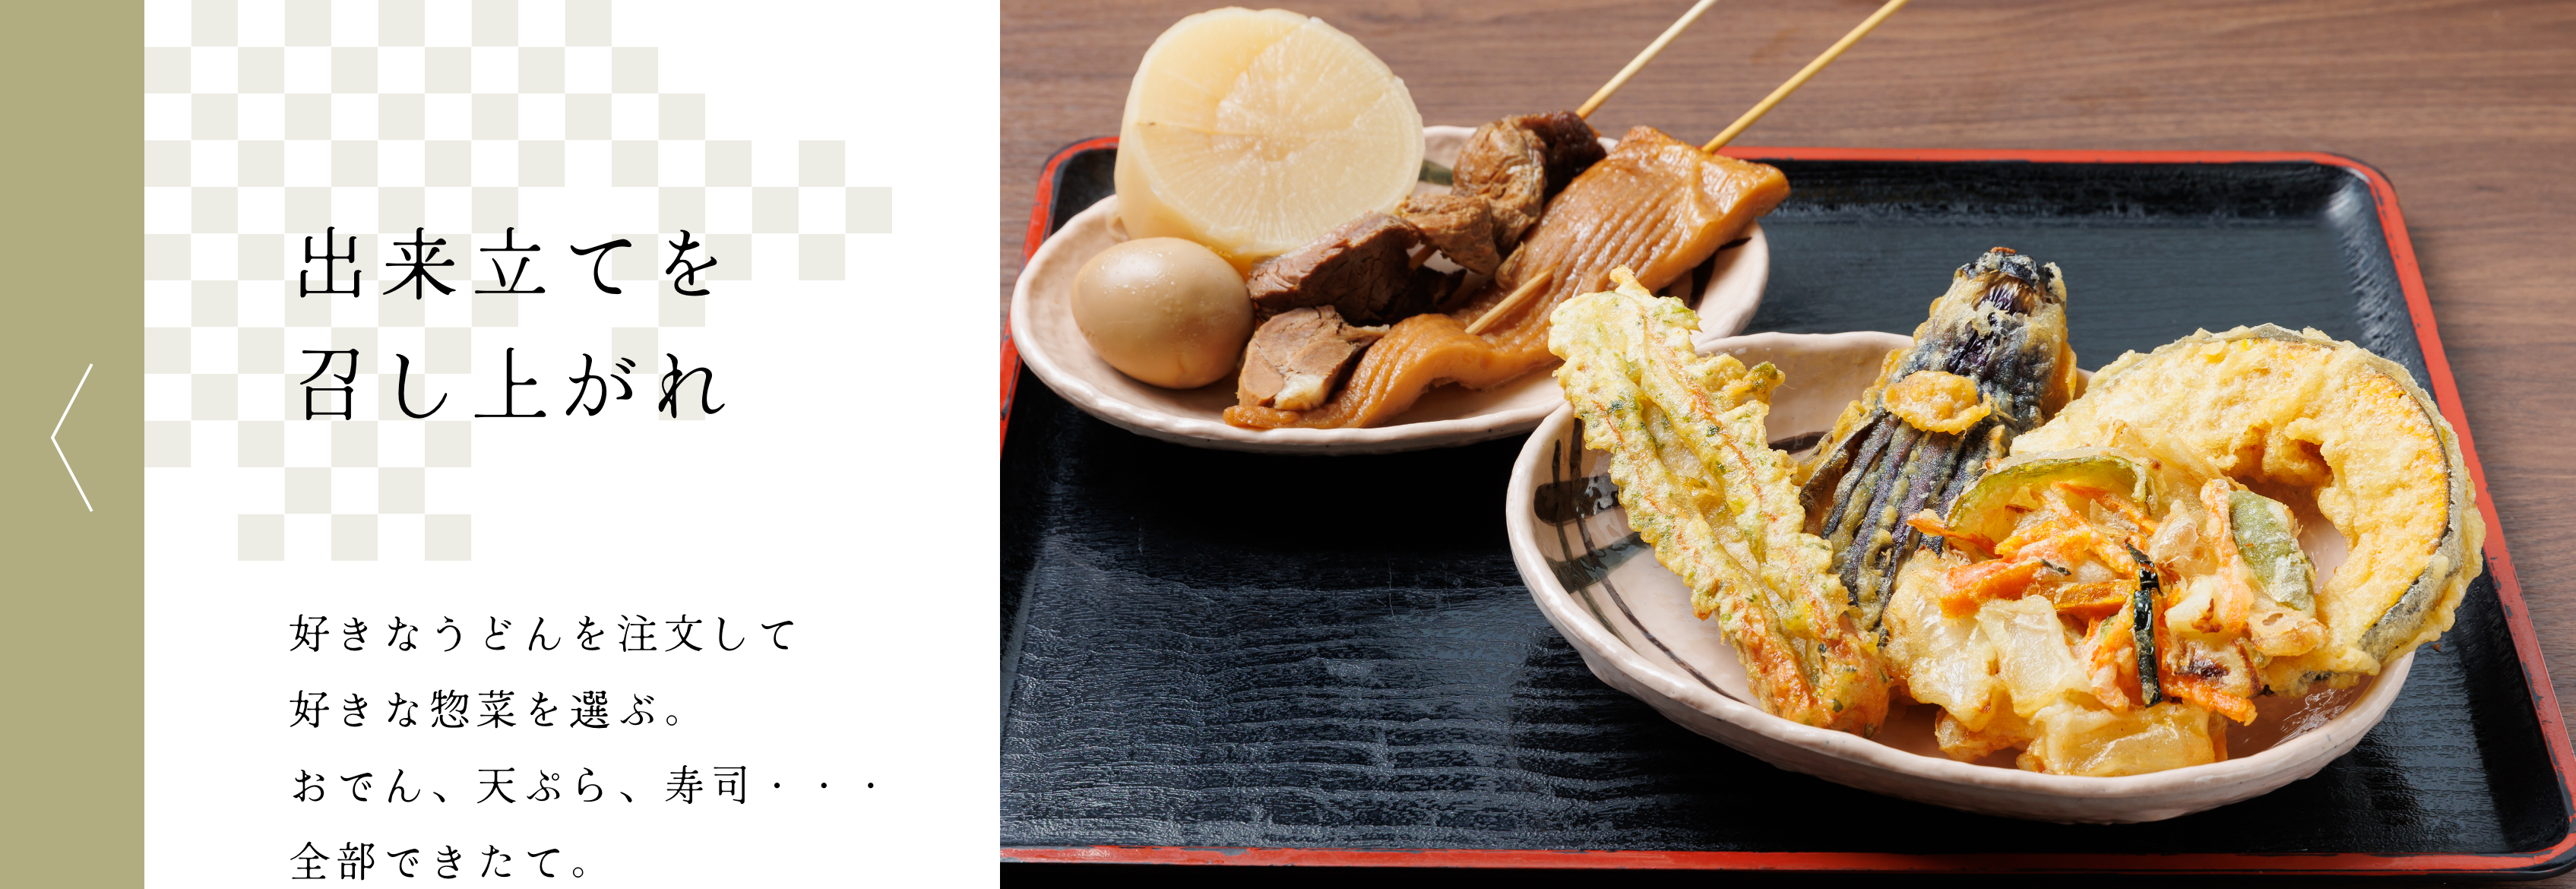 出来立てを召し上がれ 好きなうどんを註文して好きな惣菜を選ぶ。おでん、天ぷら、寿司・・・全部できたて。